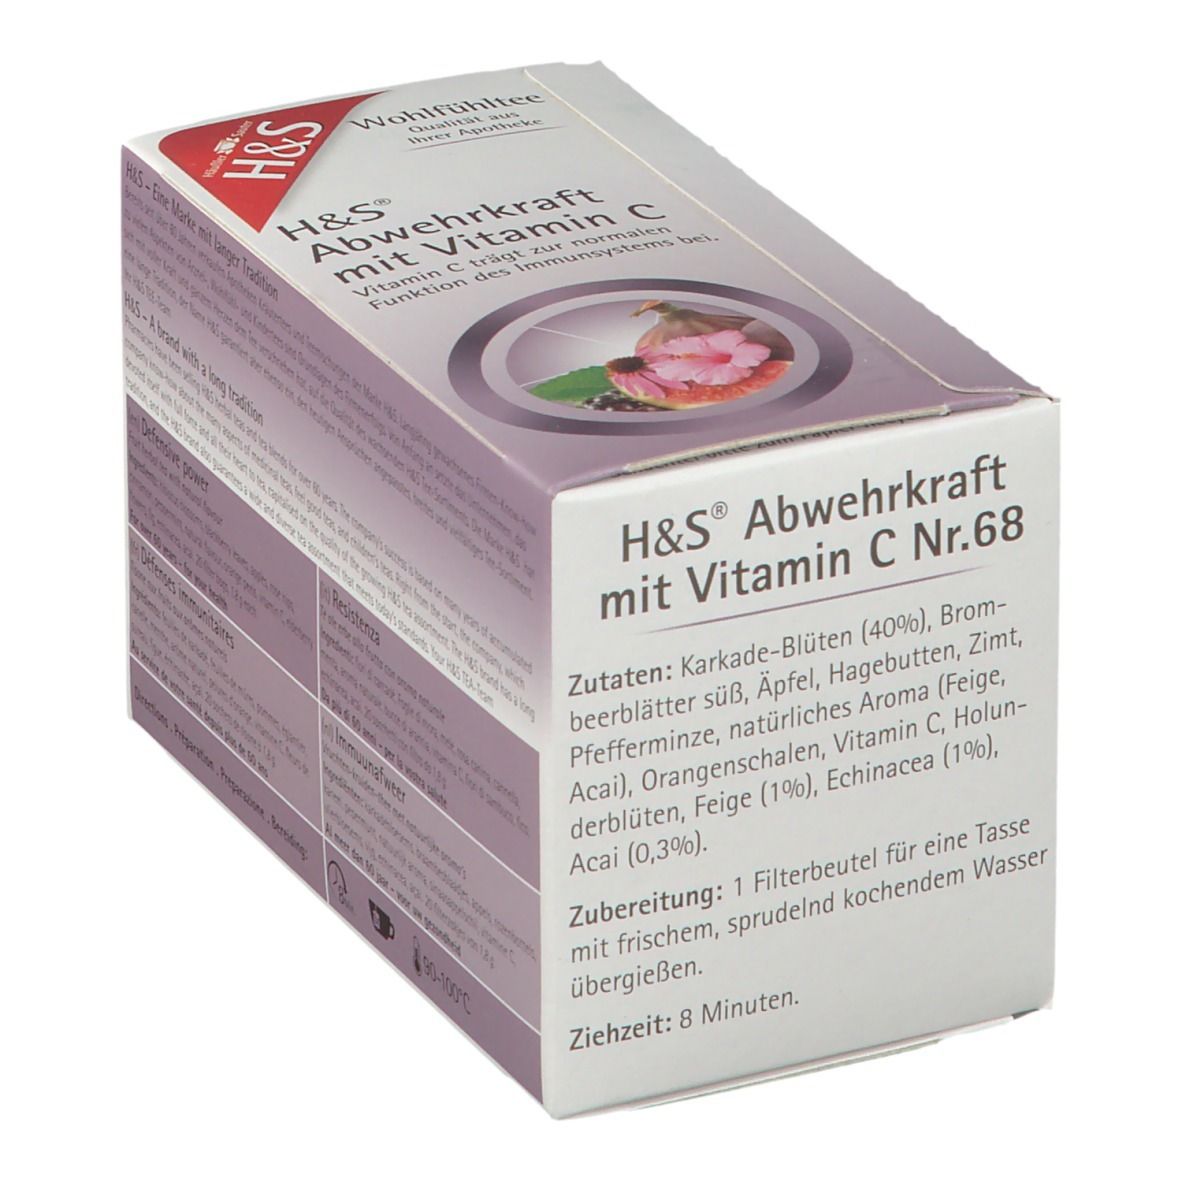 H&S Abwehrkraft mit Vitamin C